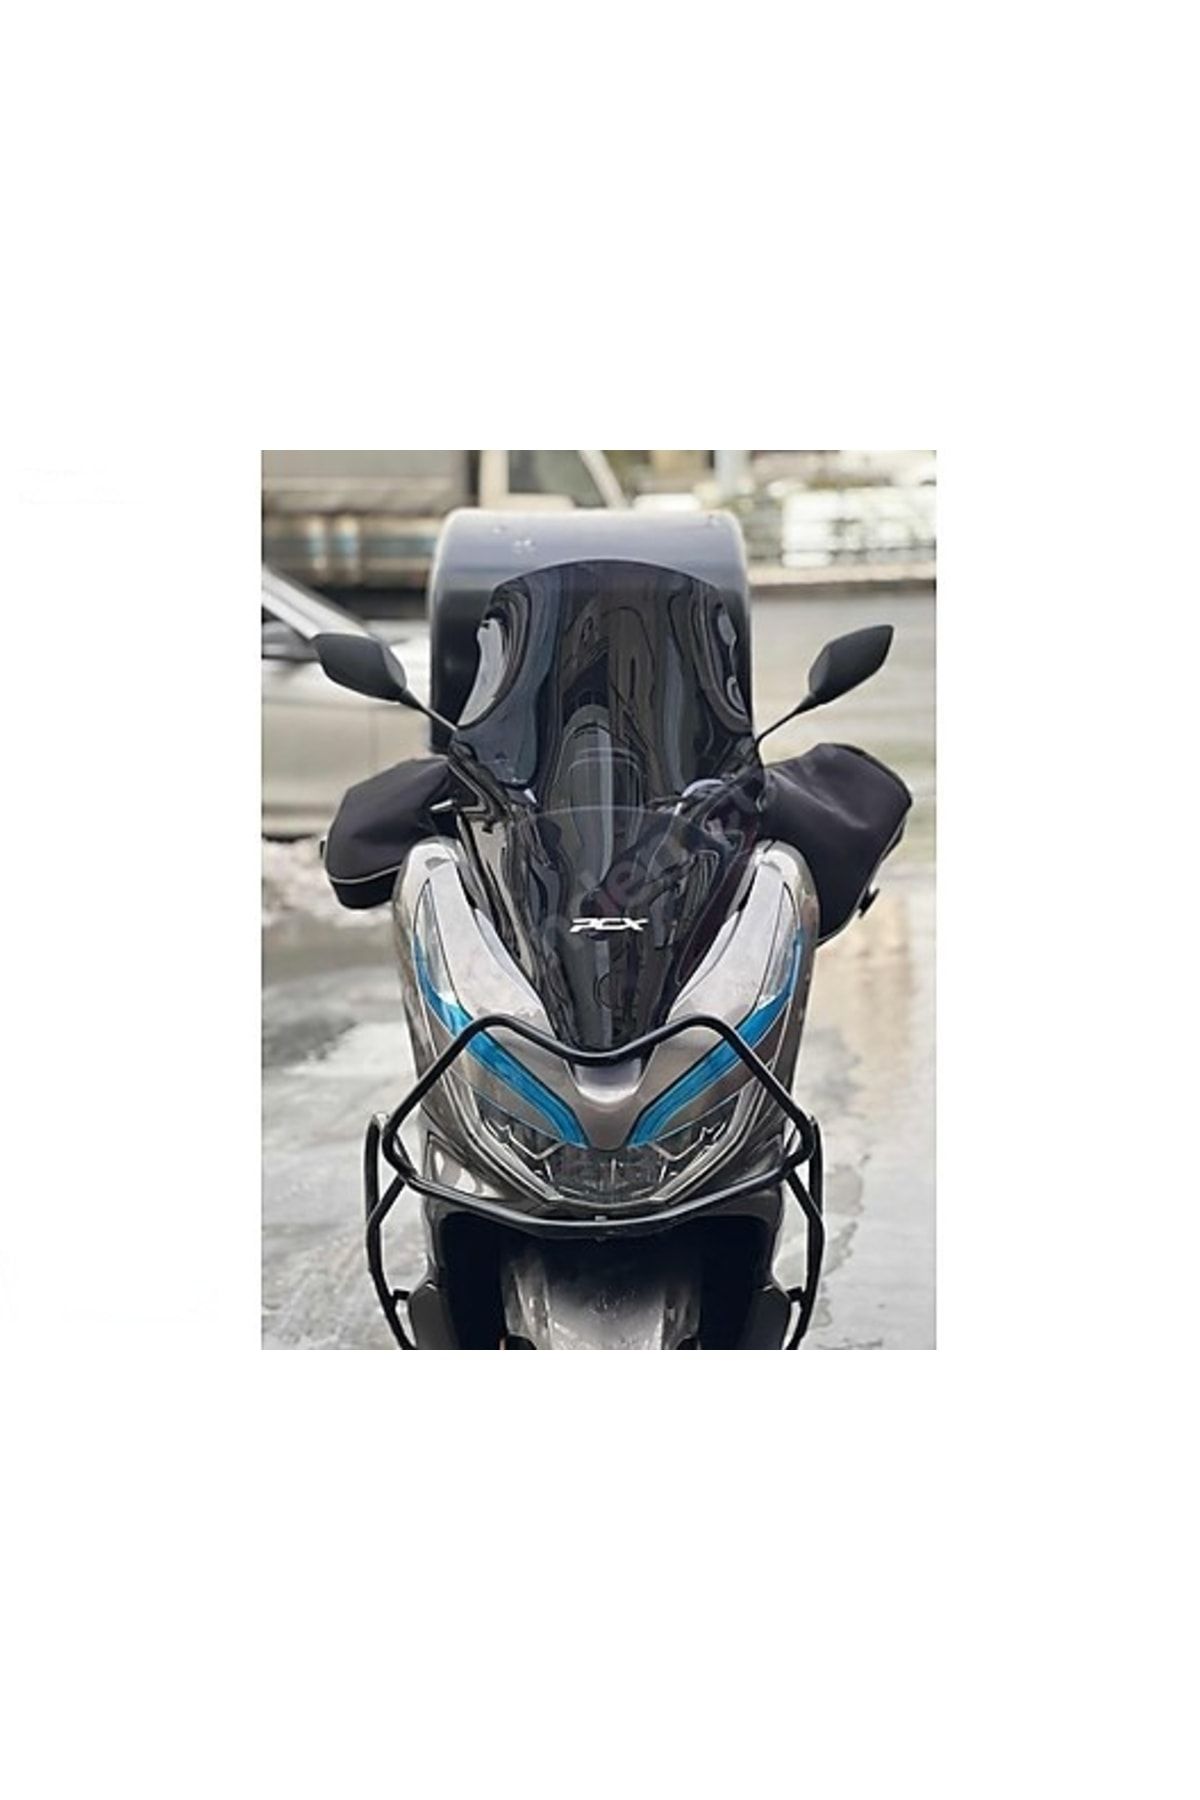 Universal Honda Pcx 2018-2020 Ön Siperlik Tur Camı Uzun Cam Pnr